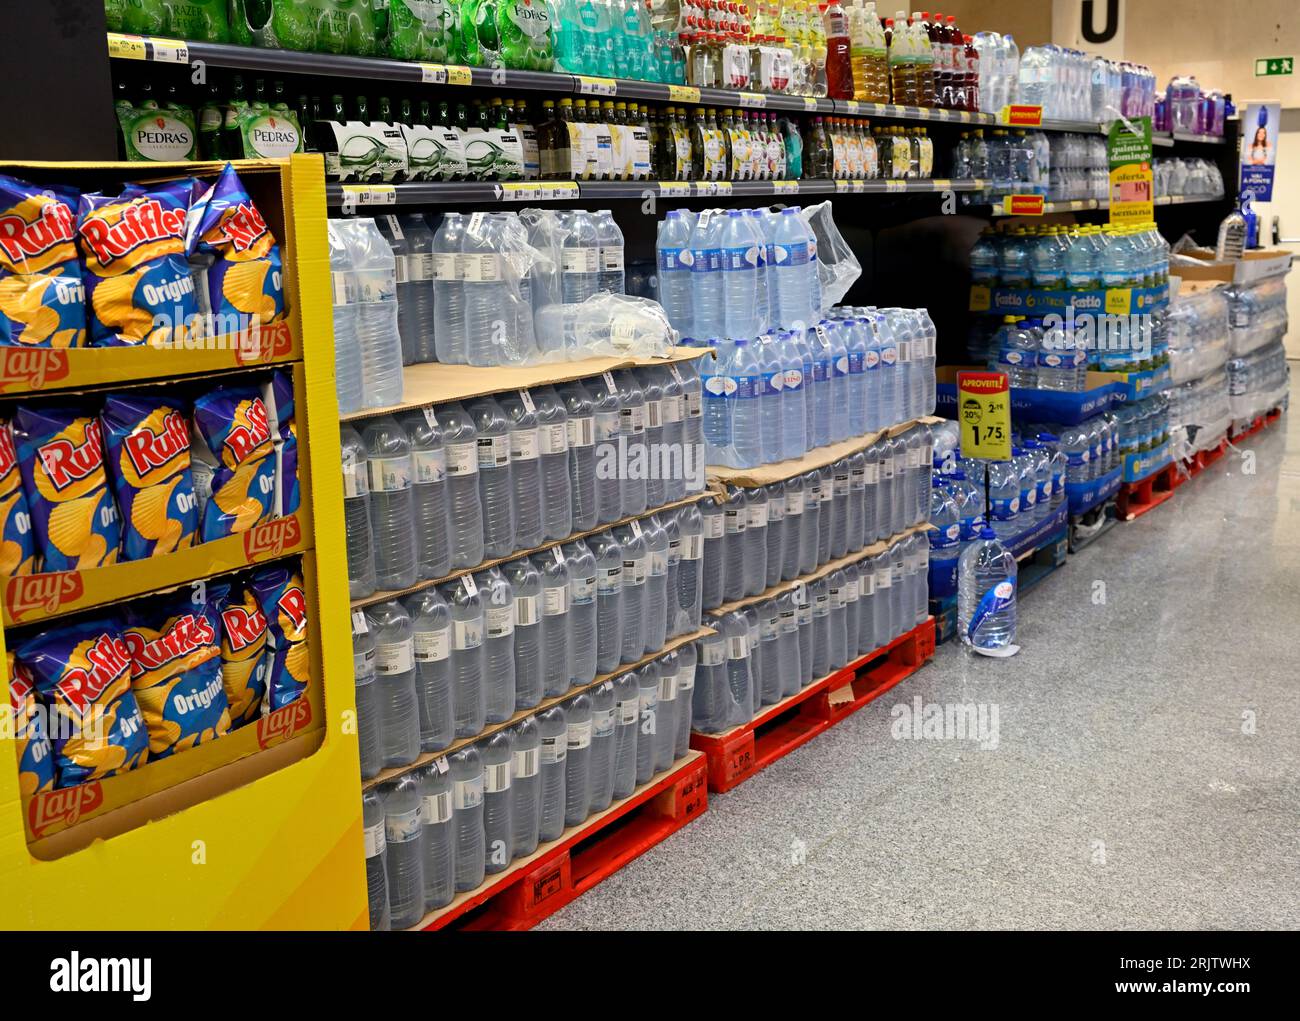 All'interno dell'ipermercato Pingo Doce Aisle con una pila di acqua in bottiglia, altre bevande e spuntini, Foto Stock